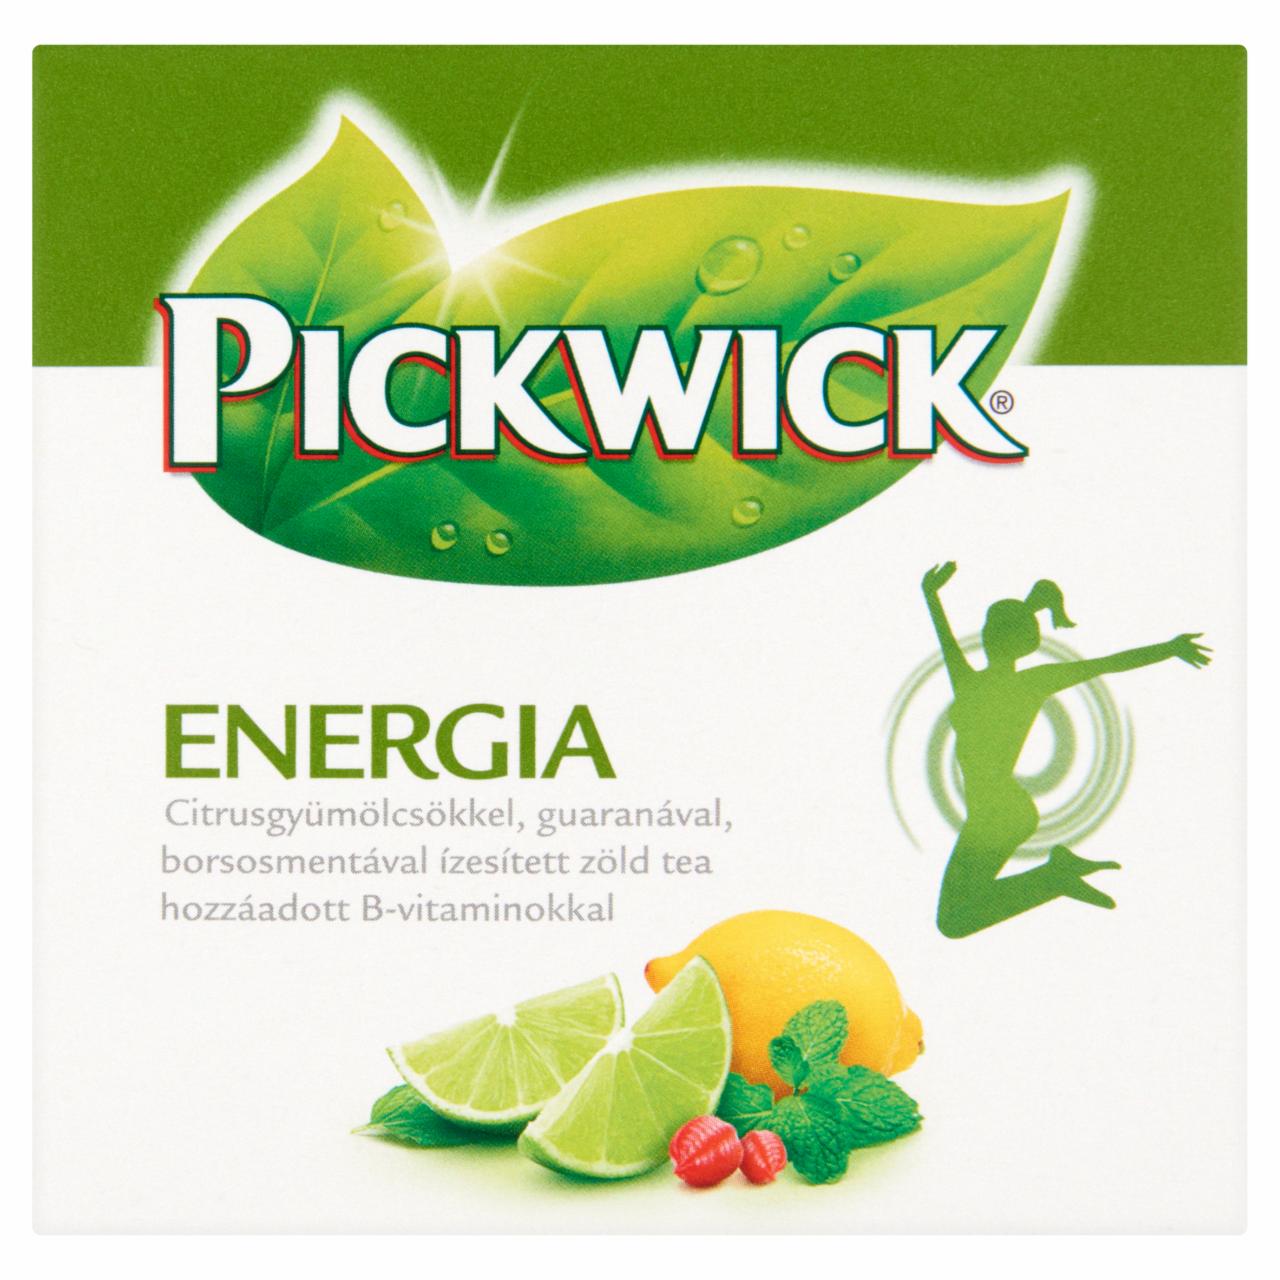 Képek - Pickwick Energia citrusgyümölcsökkel, guaranával, borsosmentával ízesített zöld tea 10 filter 15 g